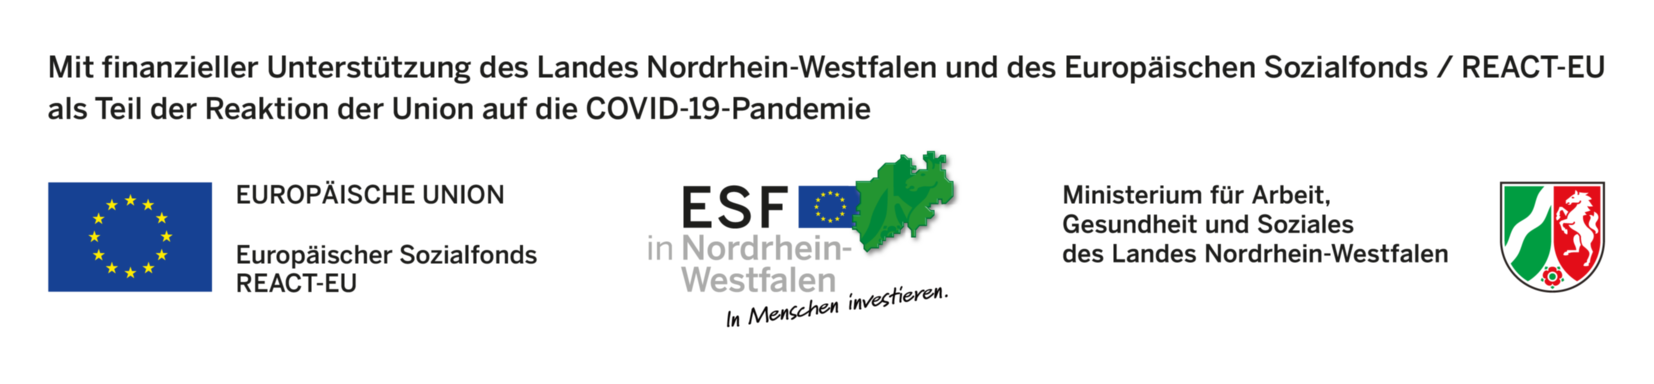 „Mit finanzieller Unterstützung des Landes Nordrhein-Westfalen und des Europäischen Sozialfonds / REACT-EU als Teil der Reaktion der Union auf die COVID-19-Pandemie“ (c) 2021 Ministerium für Arbeit, Gesundheit und Soziales des Landes Nordrhein-Westfalen